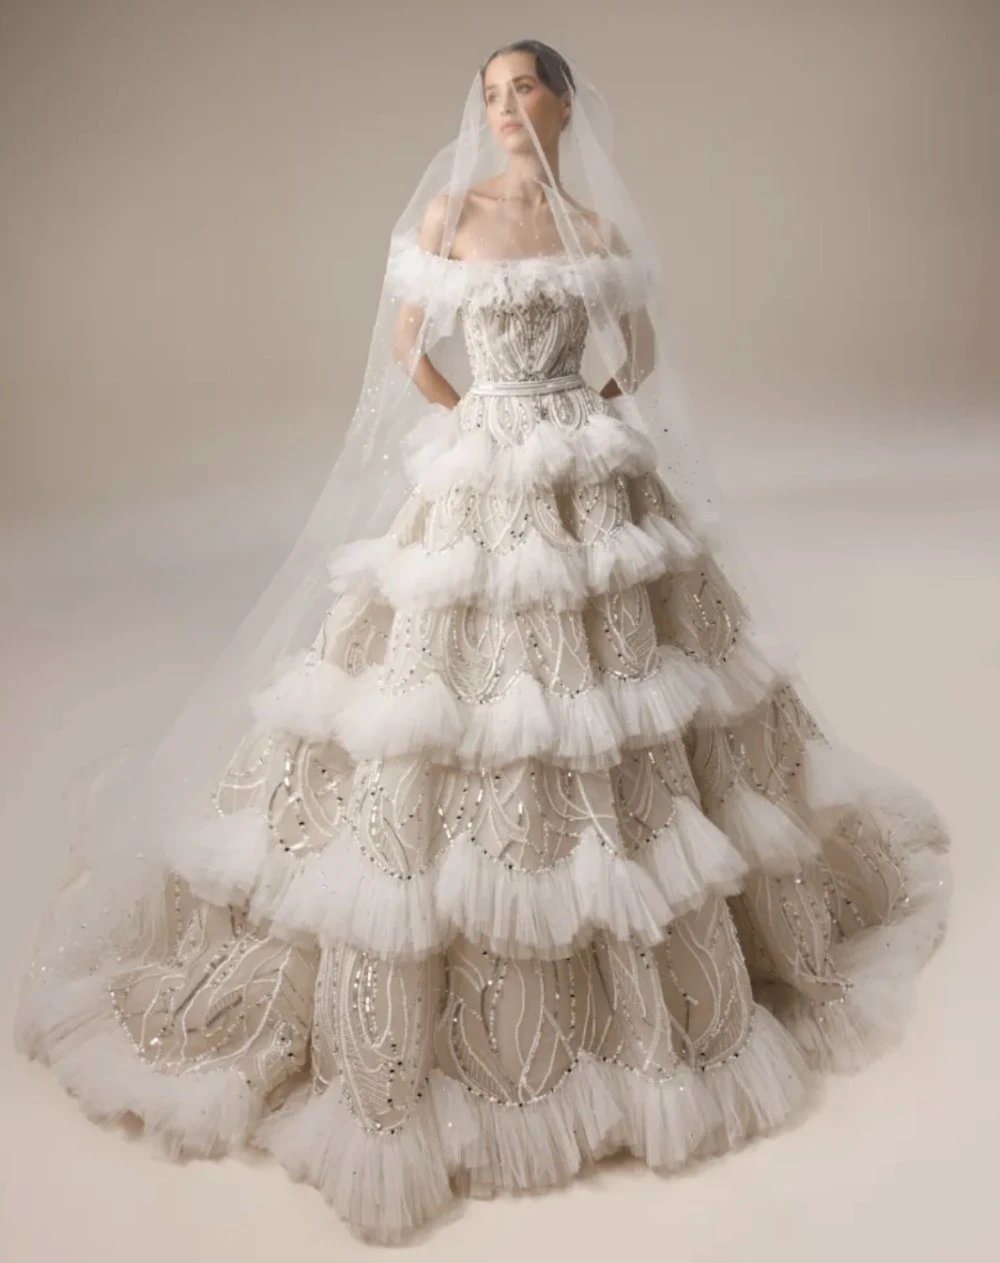 كيفية اختيار طرحة عروس بحسب شكل فستان الزفاف